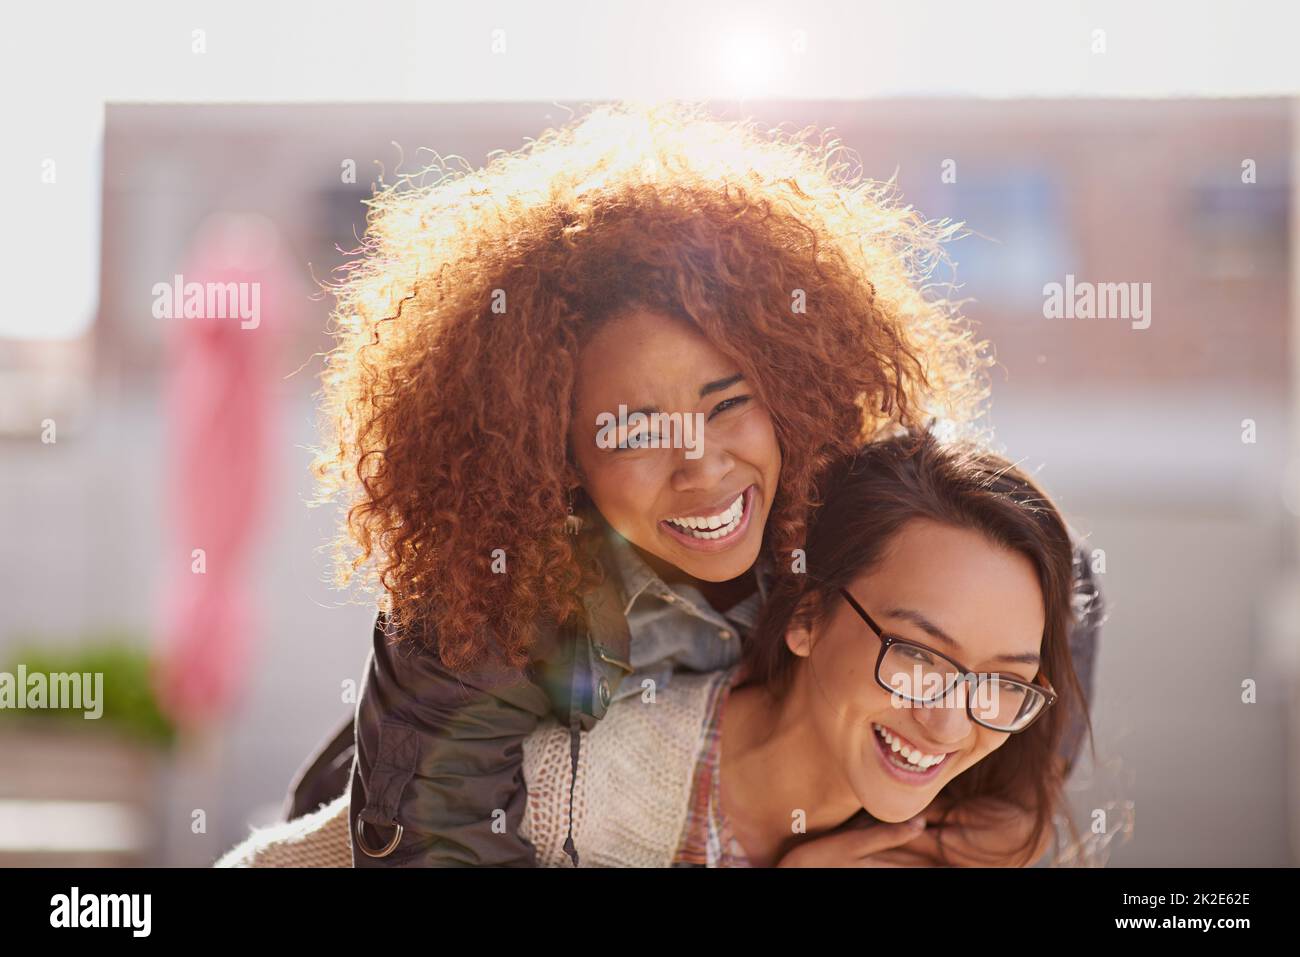 Lachen ist ein sofortiger Urlaub. Kurze Aufnahme von Freundinnen, die sich im Freien anfreunden. Stockfoto